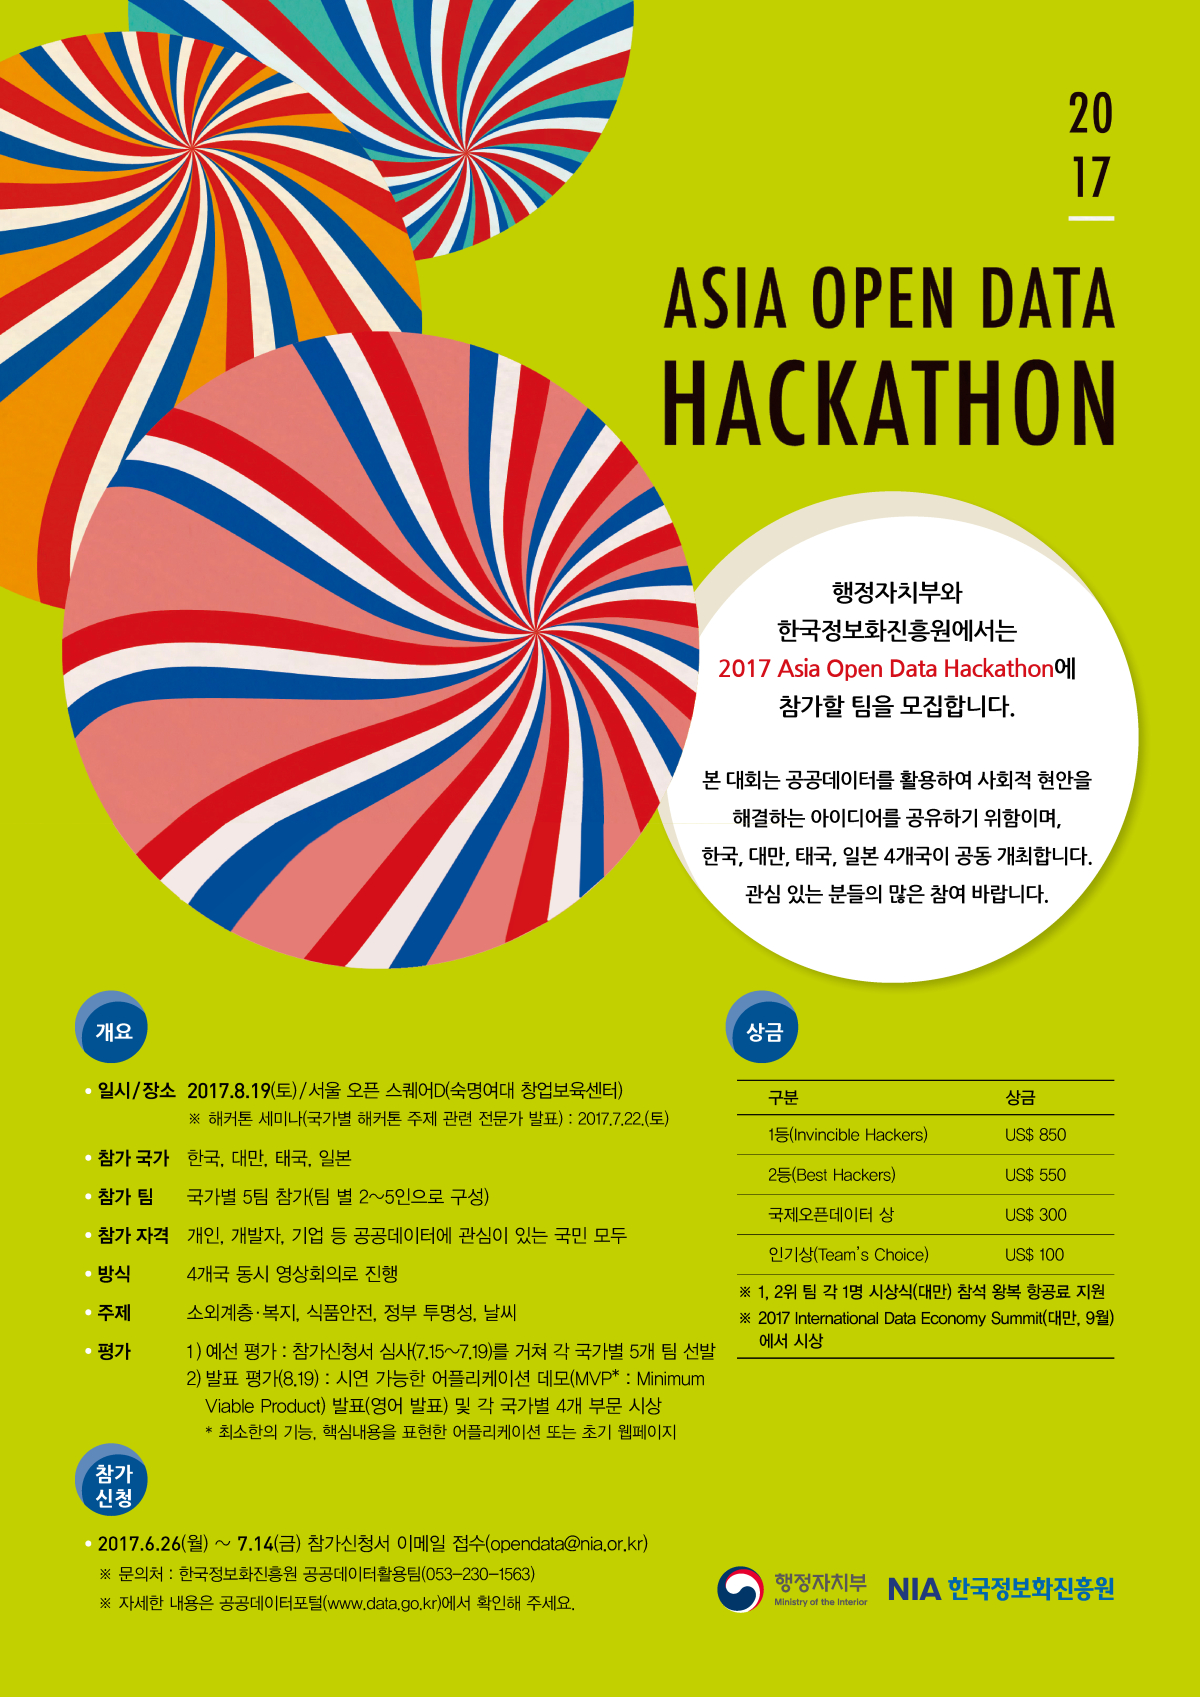 ASIA OPEN DATA HACKATHON 행정자치부와 한국정보화진흥원에서는 2017 Asia Open Data Hackathon에 참가할 팀을 모집합니다. 본 대회는 공공데이터를 활용하여 사회적 현안을 해결하는 아이디어를 공유하기 위함이며, 한국, 대만, 태국, 일본 4개국이 공동 개최합니다. 관심 있는 분들의 많은 참여 바랍니다. | ○ 개요 1) 일시/장소 : 2017.08.19(토)/서울 오픈 스퀘어D(숙명여대 창업보육센터) ※ 해커톤 세미나(국가별 해커톤 주제 관련 전문가 발표) : 2017.07.22(토) 2) 참가국가 : 한국, 대만, 태국, 일본 3) 참가 팀 : 국가별 5팀 참가 (팀별 2~5인으로 구성) 4) 참가자격 : 개인, 개발자, 기업 등 공공데이터에 관심이 있는 국민 모두 5) 방식 : 4개국 동시 영상회의로 진행 6) 주제 : 소외계층·복지, 식품안전, 정부 투명성, 날씨 7) 평가 ① 예선 평가 : 참가신청서 심사(7.15~7.19)를 거쳐 각 국가별 5개팀 선발 ② 발표 평가(8.19) : 시연 가능한 어플리케이션 데모 (MVP : Minimum Viable Product) 발표(영어 발표) 및 각 국가별 4개 부문 시상 * 최소한의 기능, 핵심내용을 표현한 어플리케이션 또는 초기 웹페이지 | ○ 참가신청 : 2017.06.26(월) ~ 07.14(금) 참가신청서 이메일 접수(opendata@nia.or.kr) ※ 문의처 : 한국정보화진흥원 공공데이터활용팀 (053-230-1563) ※ 자세한 내용은 공공데이터포털(www.data.go.kr)에서 확인해 주세요. | ○ 상금 : 1등(Invincible Hackers) US$ 850, 2등(Best Hackers) US$ 550, 국제오픈데이터 상 US$ 300, 인기상(Team's Choice) US$ 100 ※ 1, 2위팀 각 1명 시상식(대만) 참석 왕복 항공료 지원 ※ 2017 International Data Economy Summit (대만, 9월)에서 시상